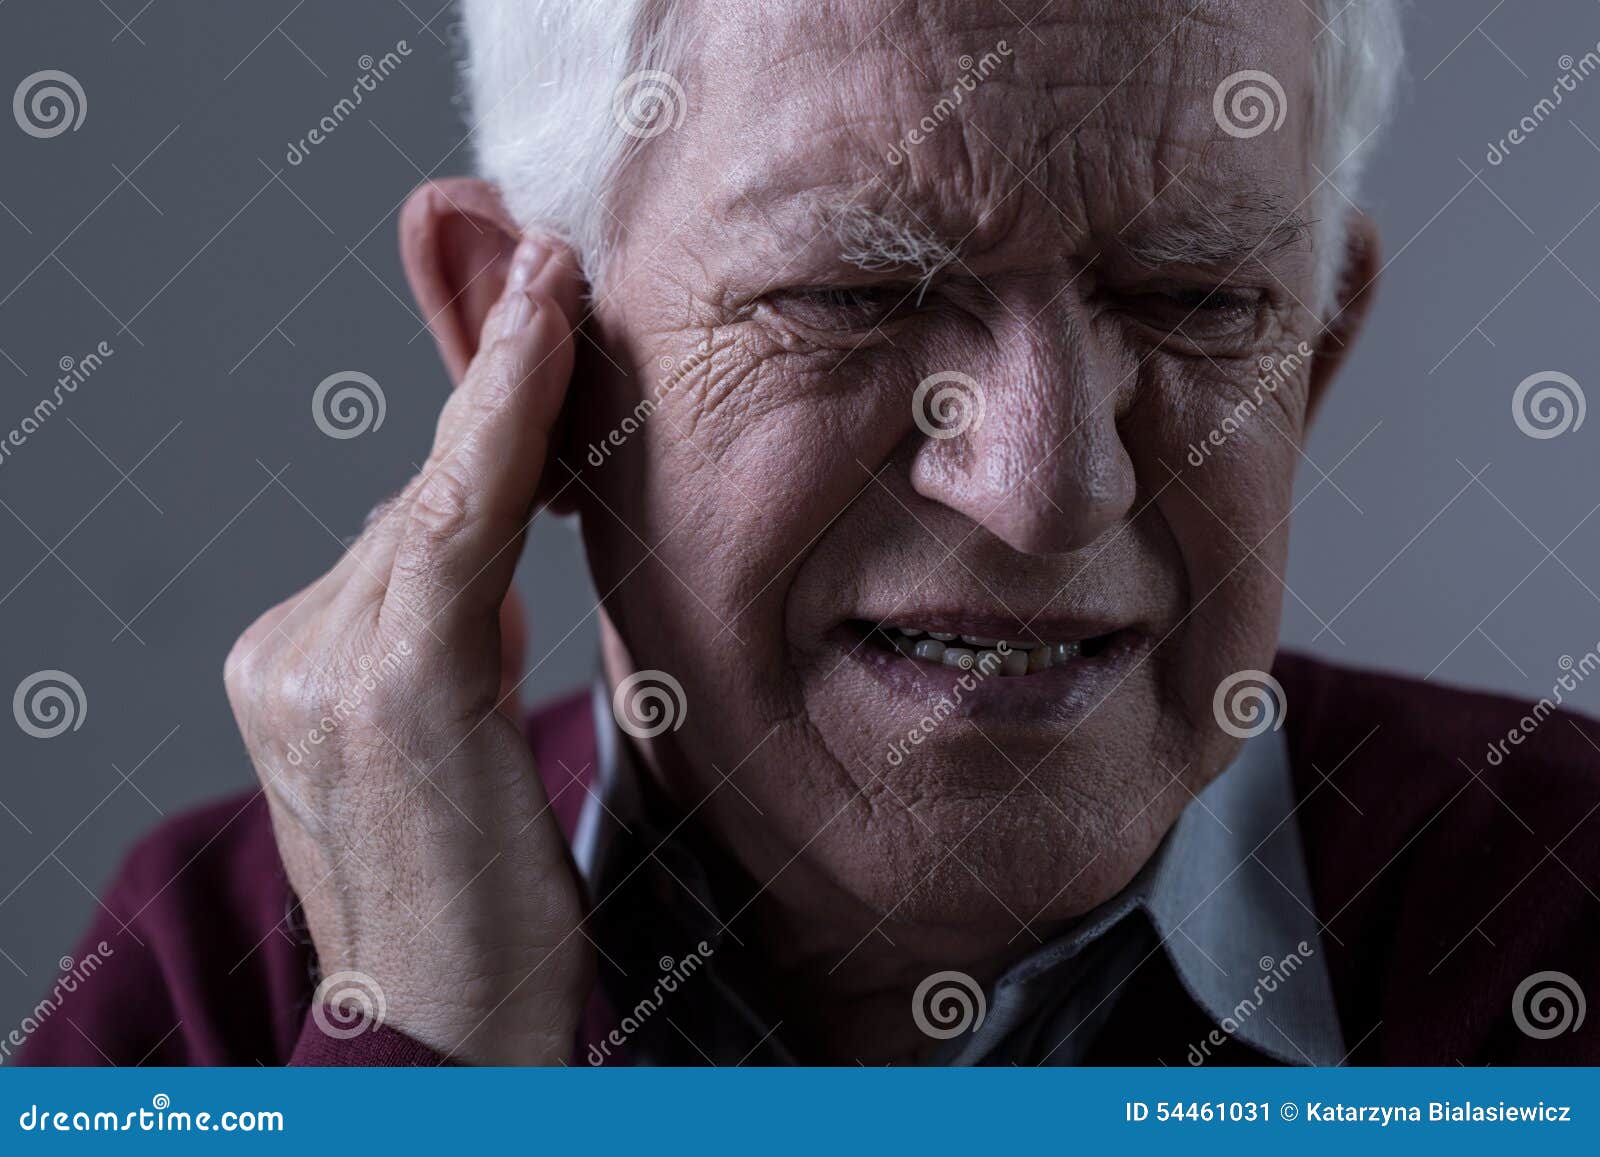 old man with tinnitus